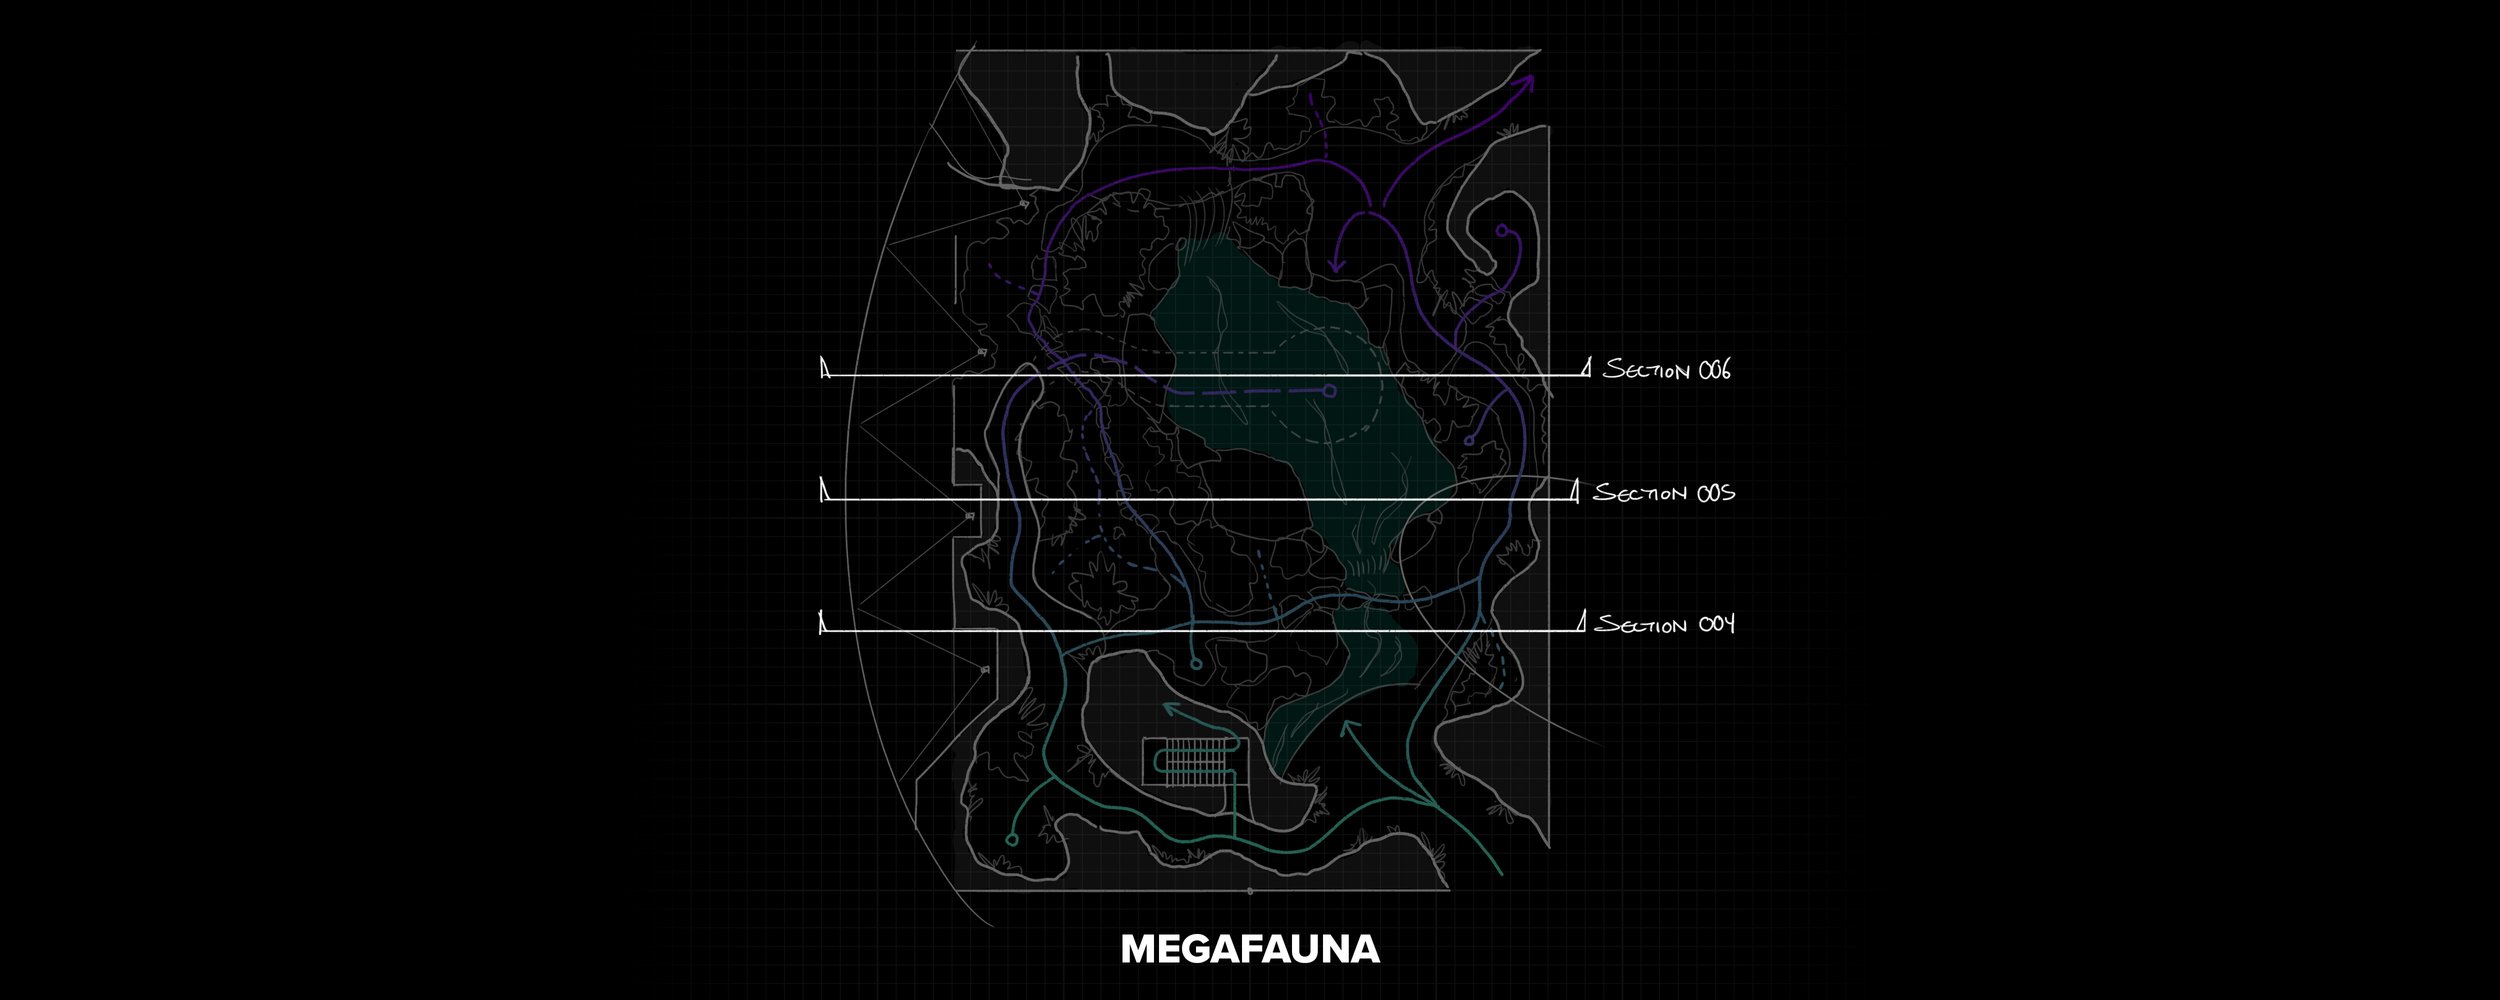 3 Megafauna Floorplan 003.jpg